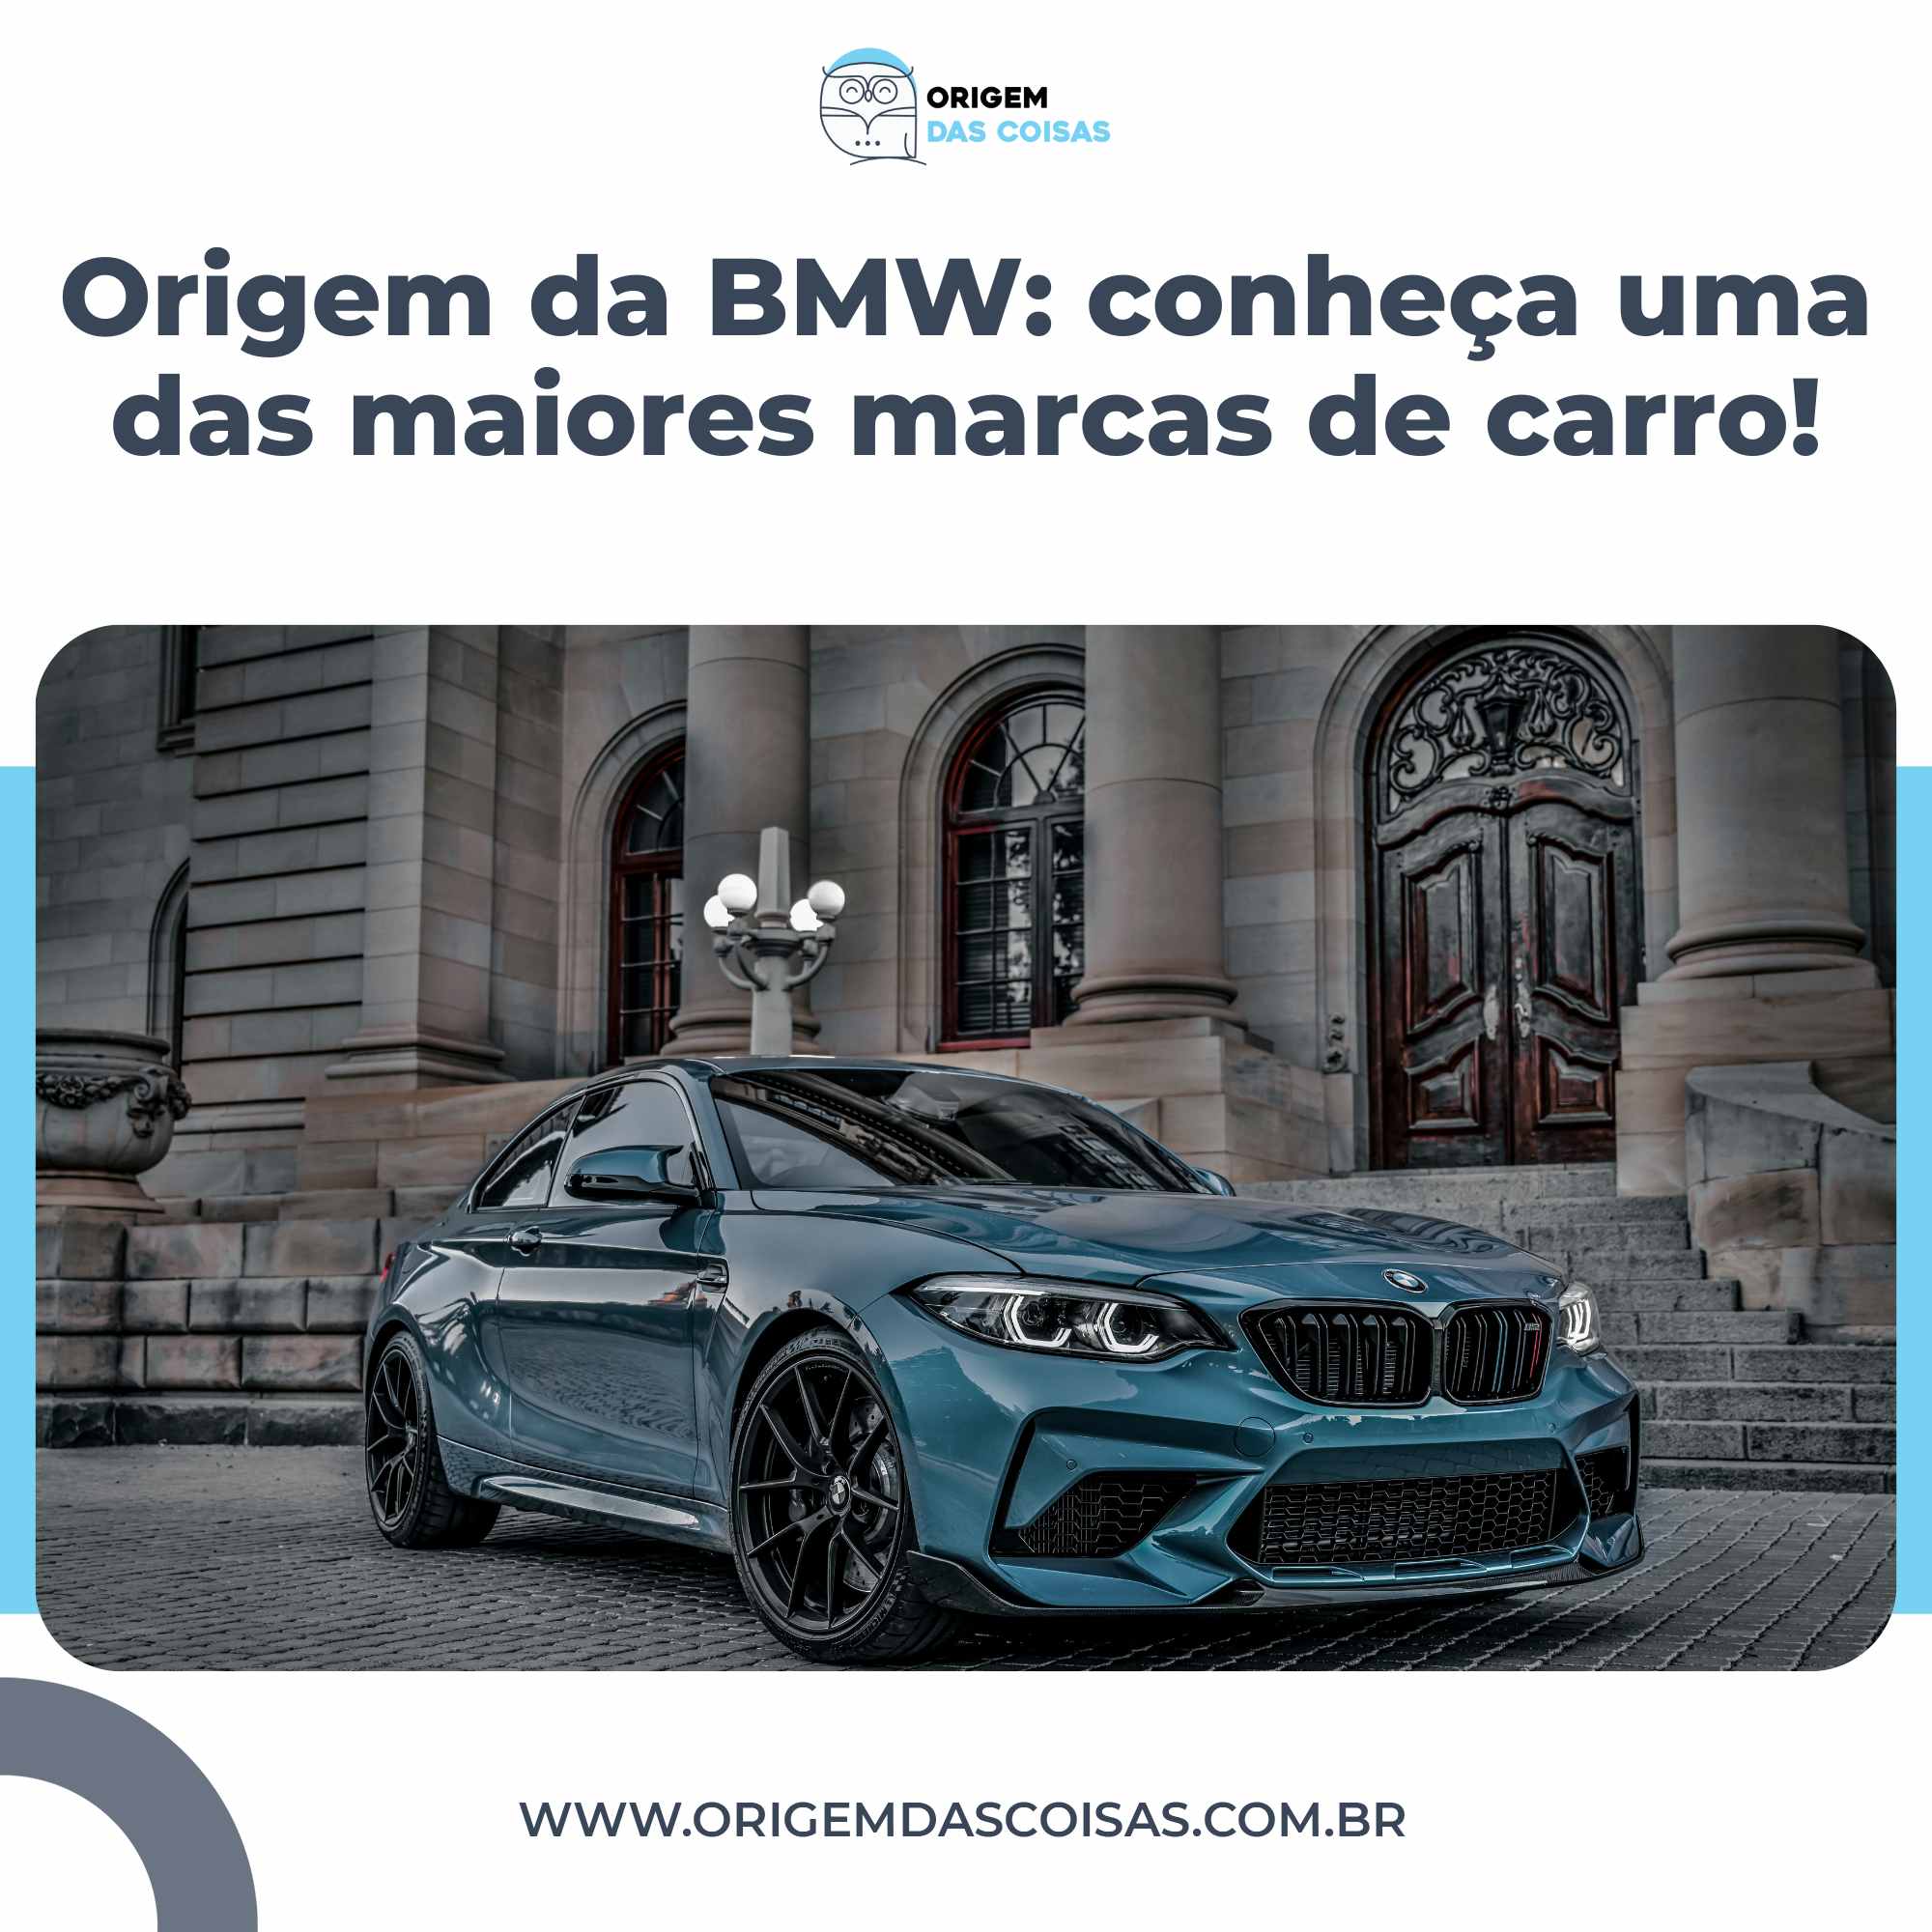 Origem da BMW conheça uma das maiores marcas de carro!